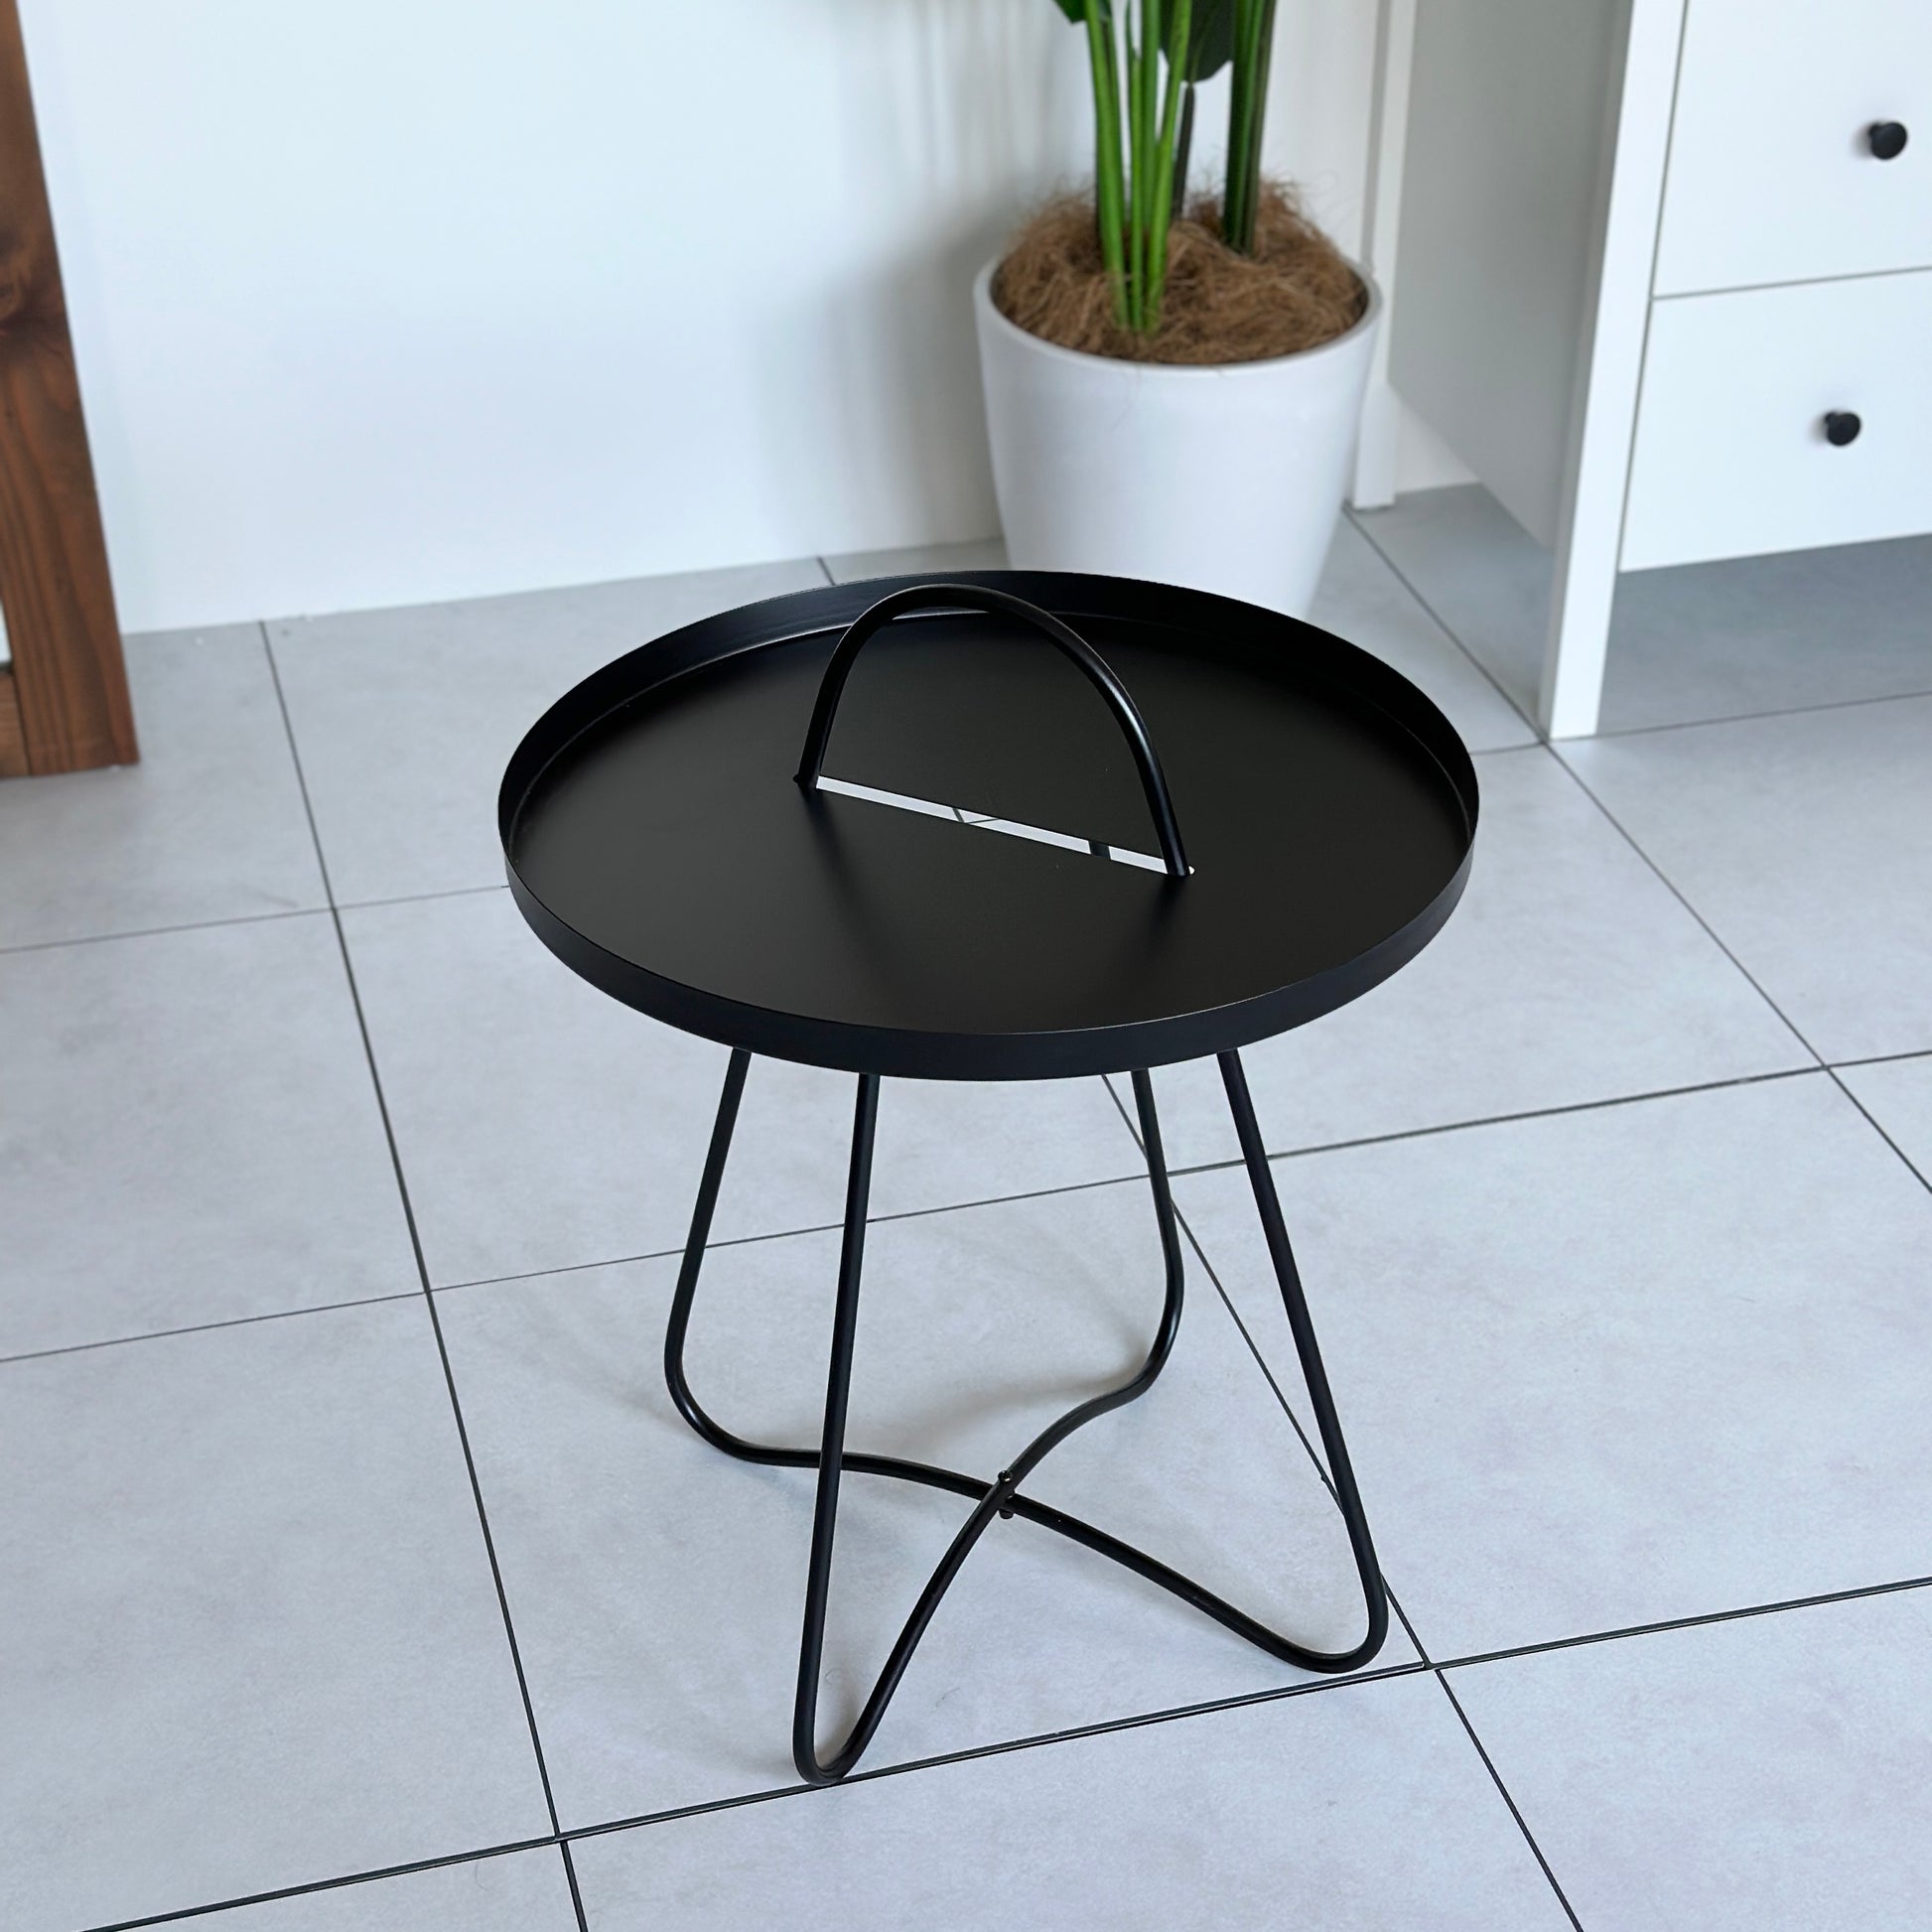 アイアン製の黒いサイドテーブル